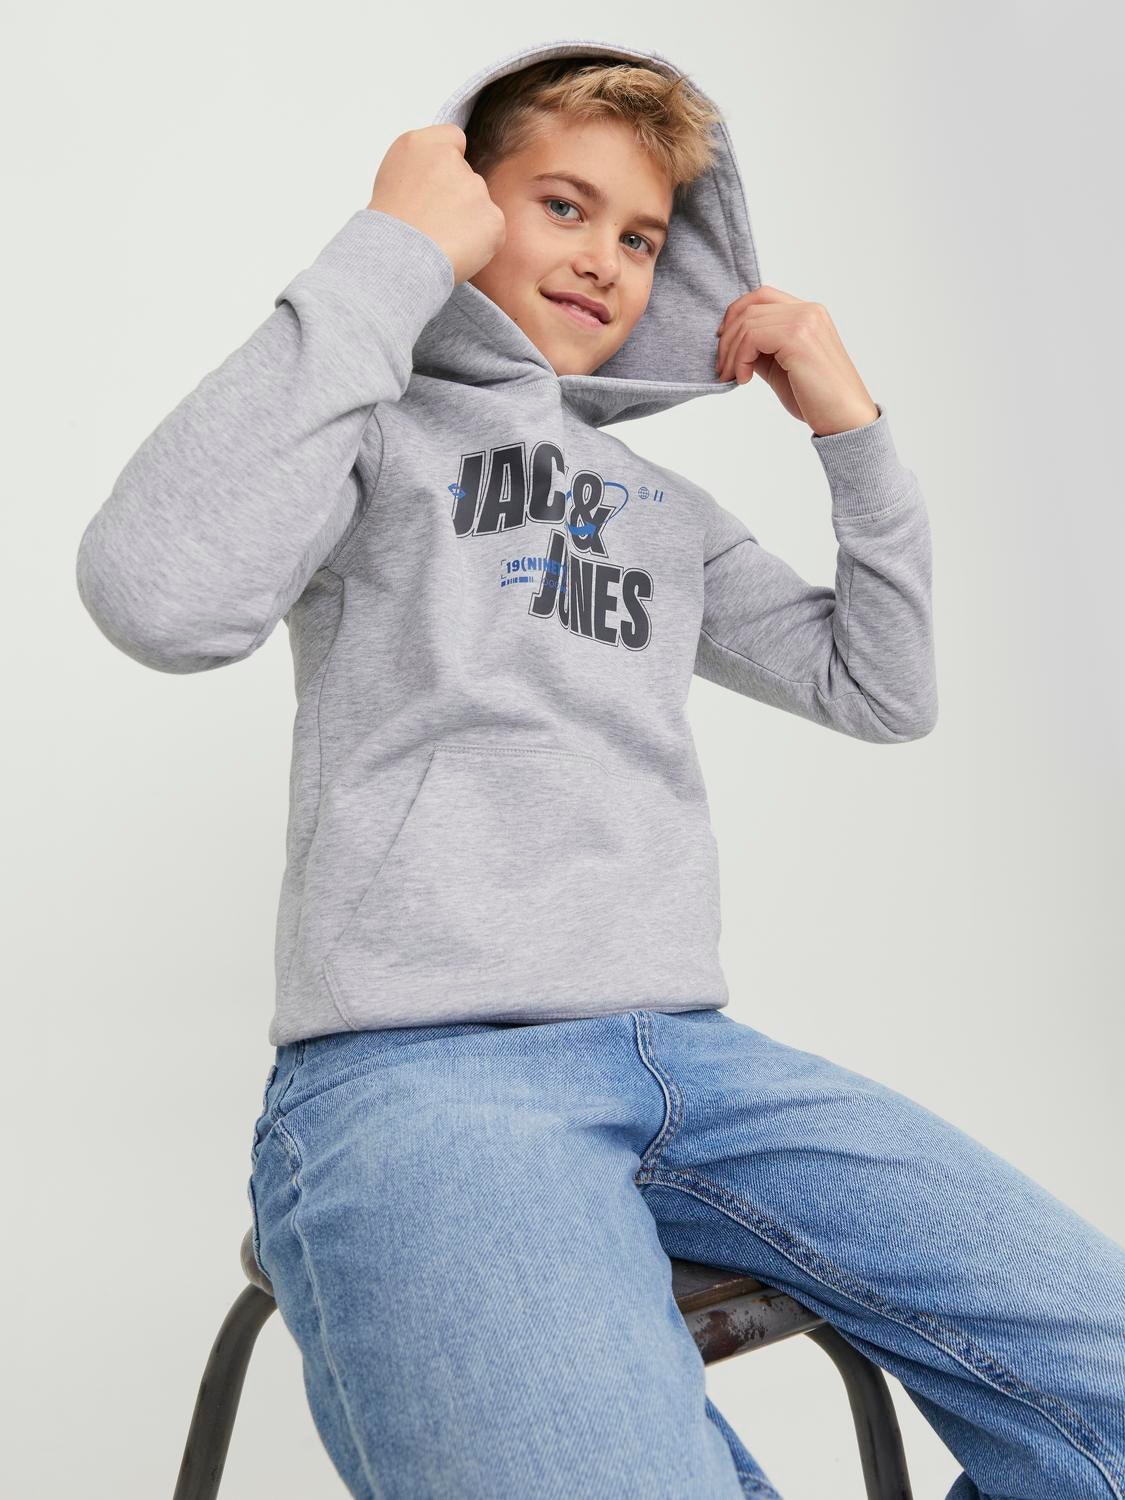 Jack & Jones Z logo Bluza z kapturem Dla chłopców -Light Grey Melange - 12247700